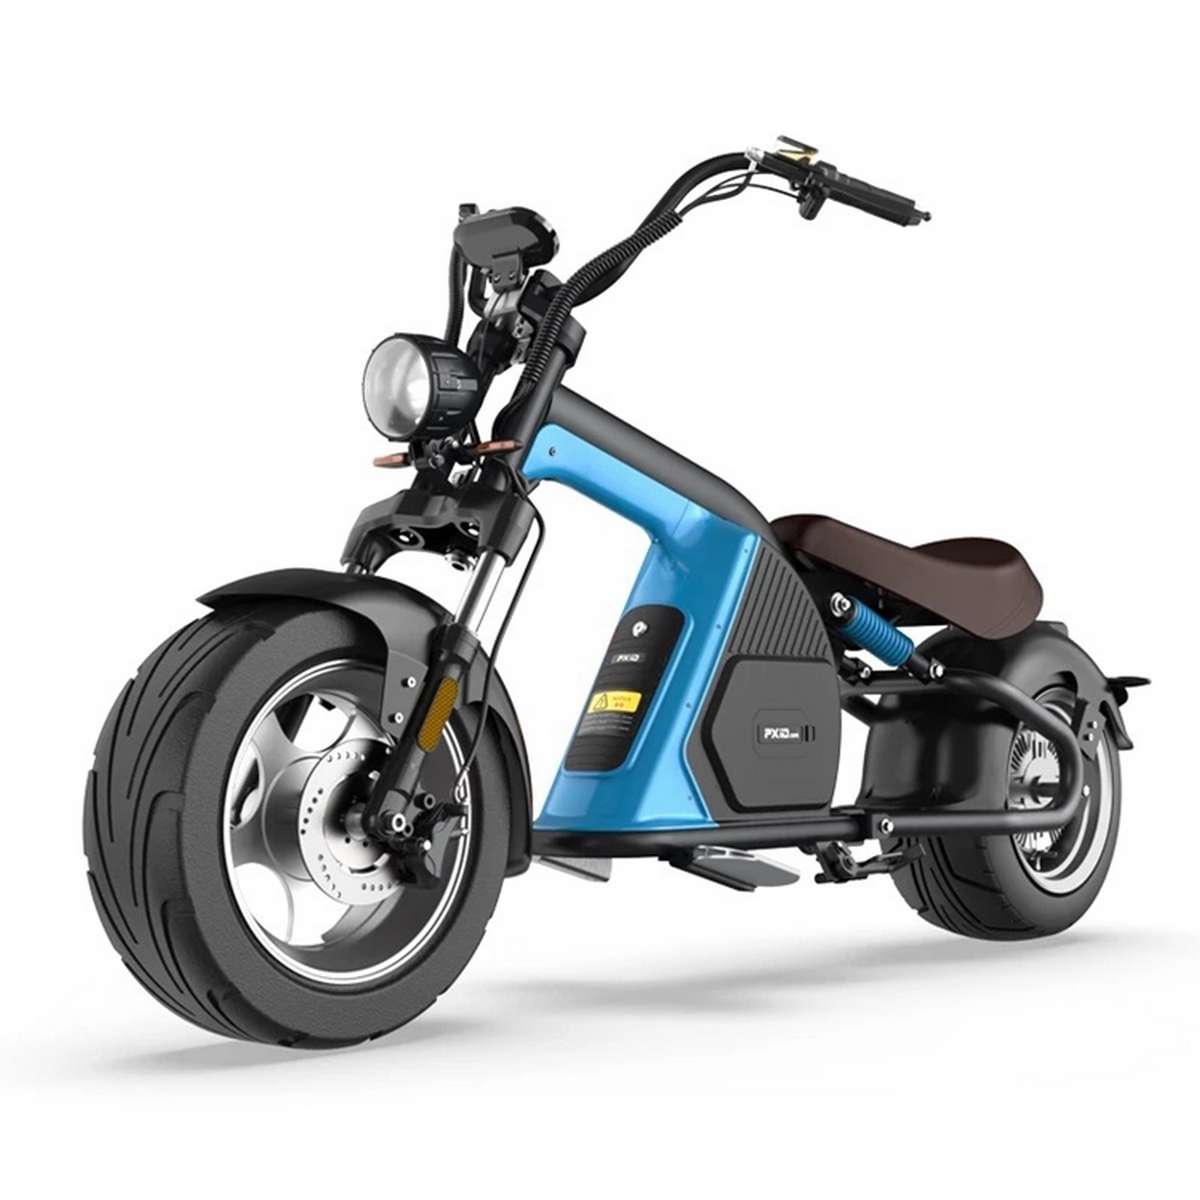 Ce scooter électrique aux allures de chopper sera-t-il disponible